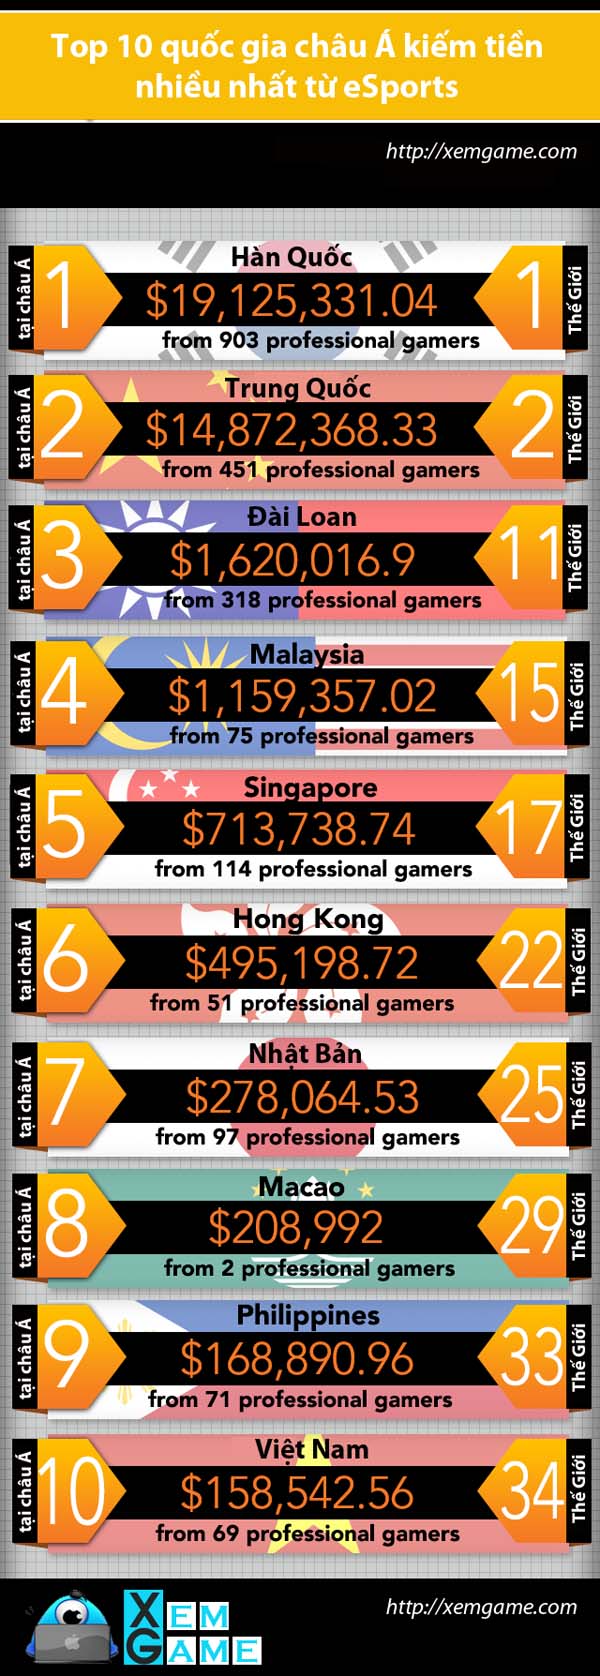 eSports money Asia (1)